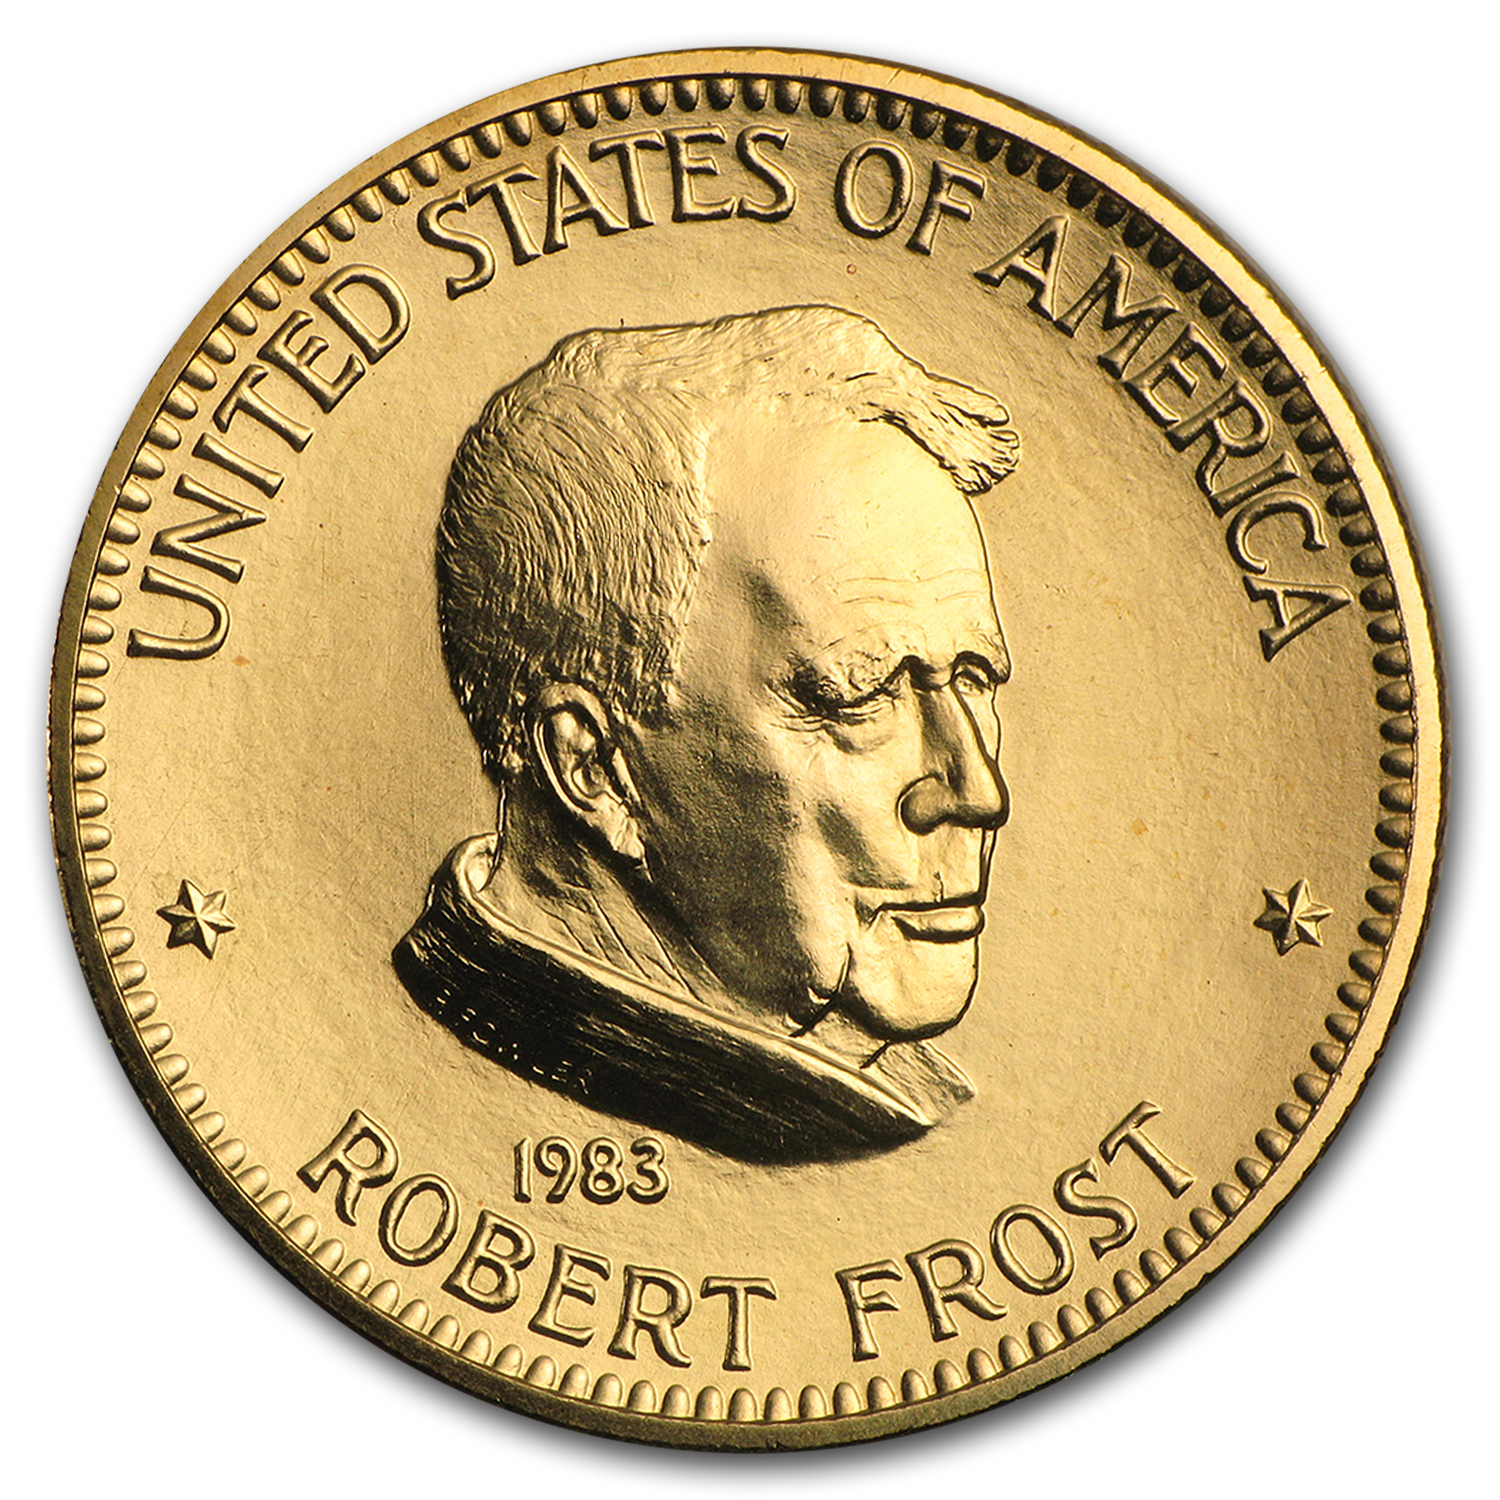 Buy U.S. Mint 1 oz Gold Commemorative Arts Medal Robert Frost - Click Image to Close